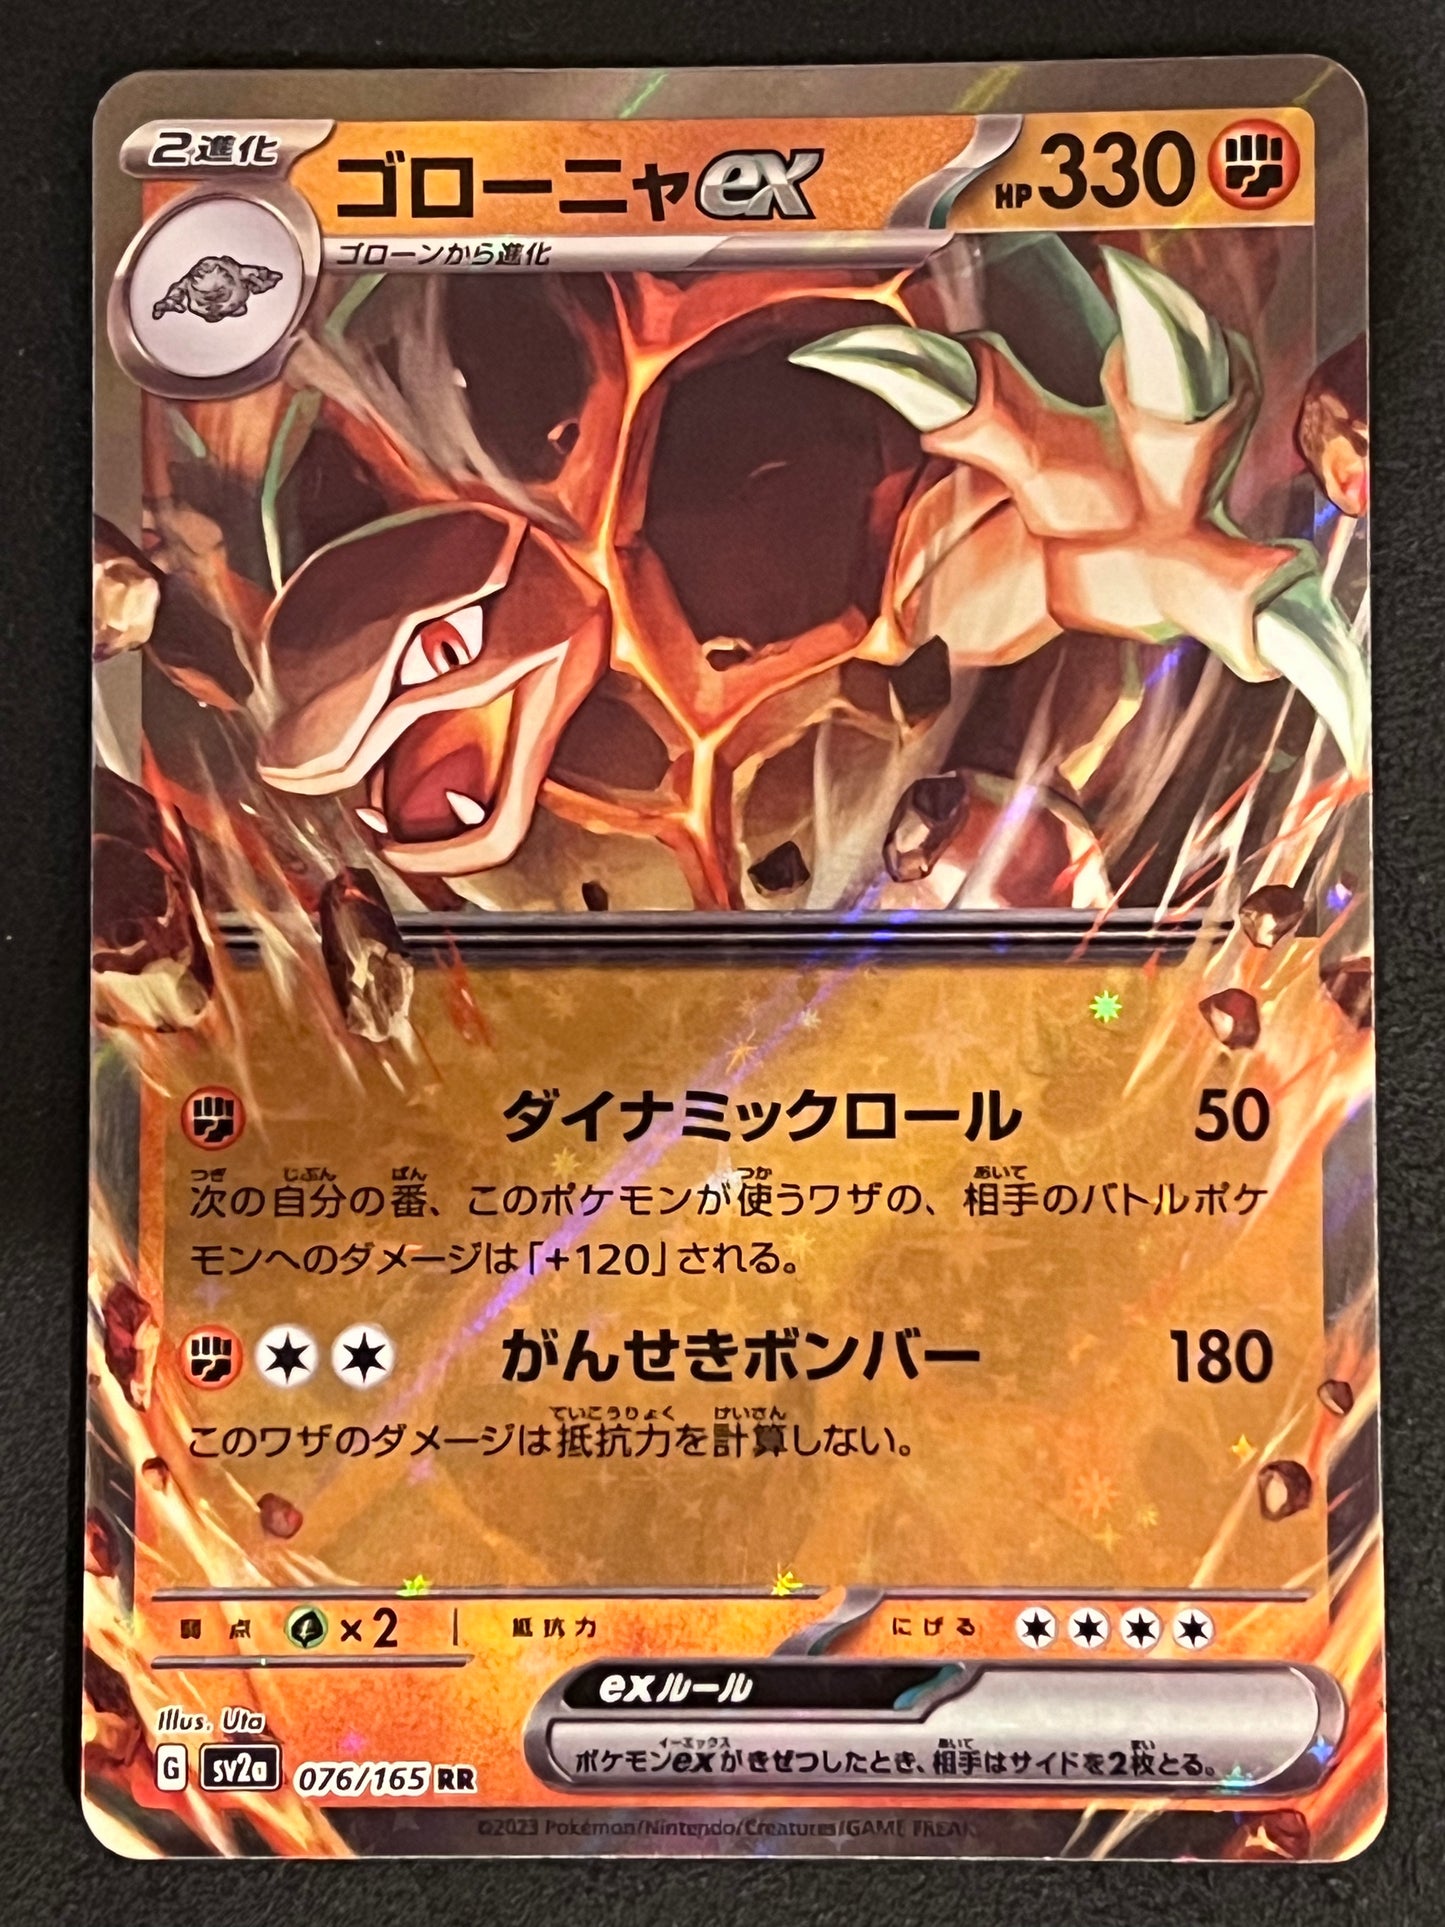 Golem ex - 076/165 Sv2a Pokémon Card 151 Double Rare Holo ex